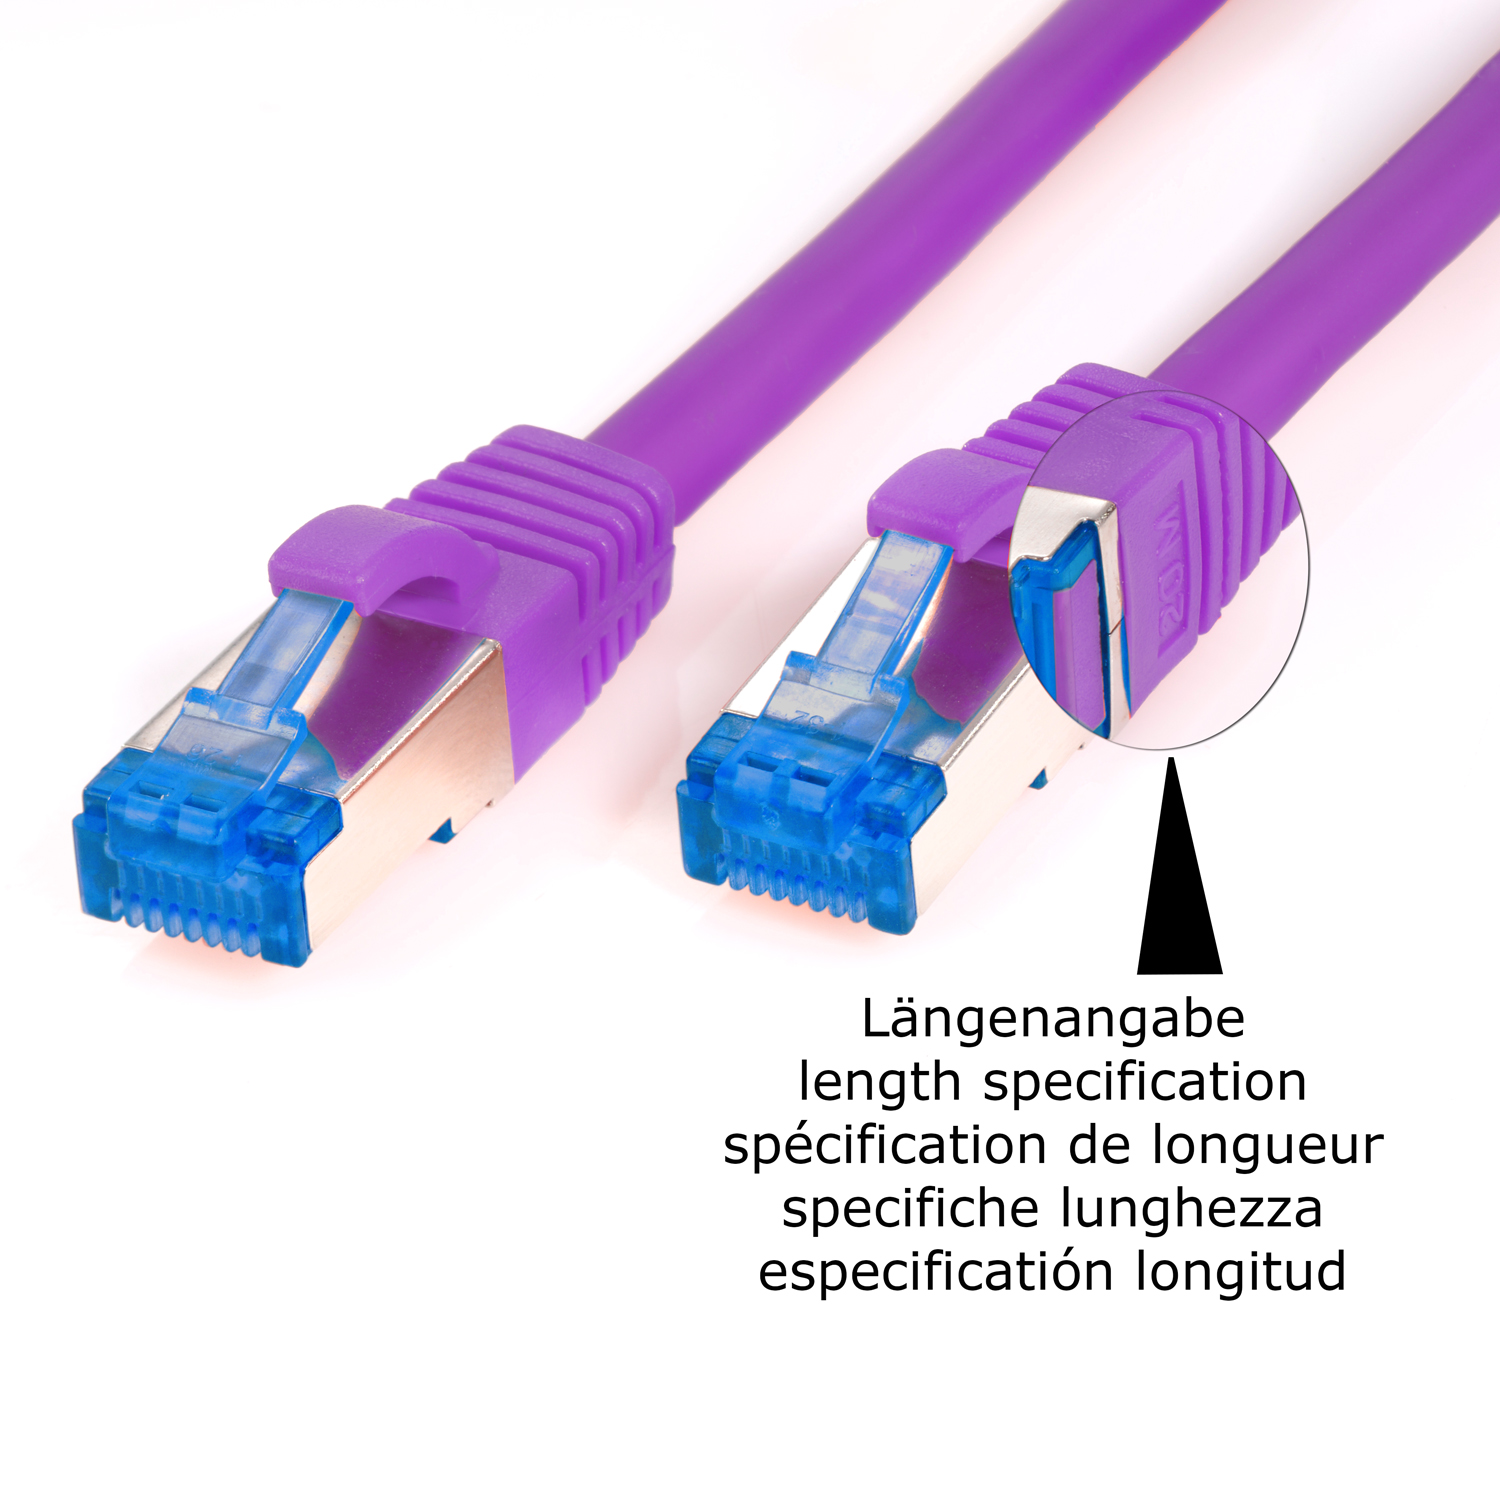 10GBit, Netzwerkkabel, m violett, Patchkabel Netzwerkkabel 15 15m S/FTP / TPFNET